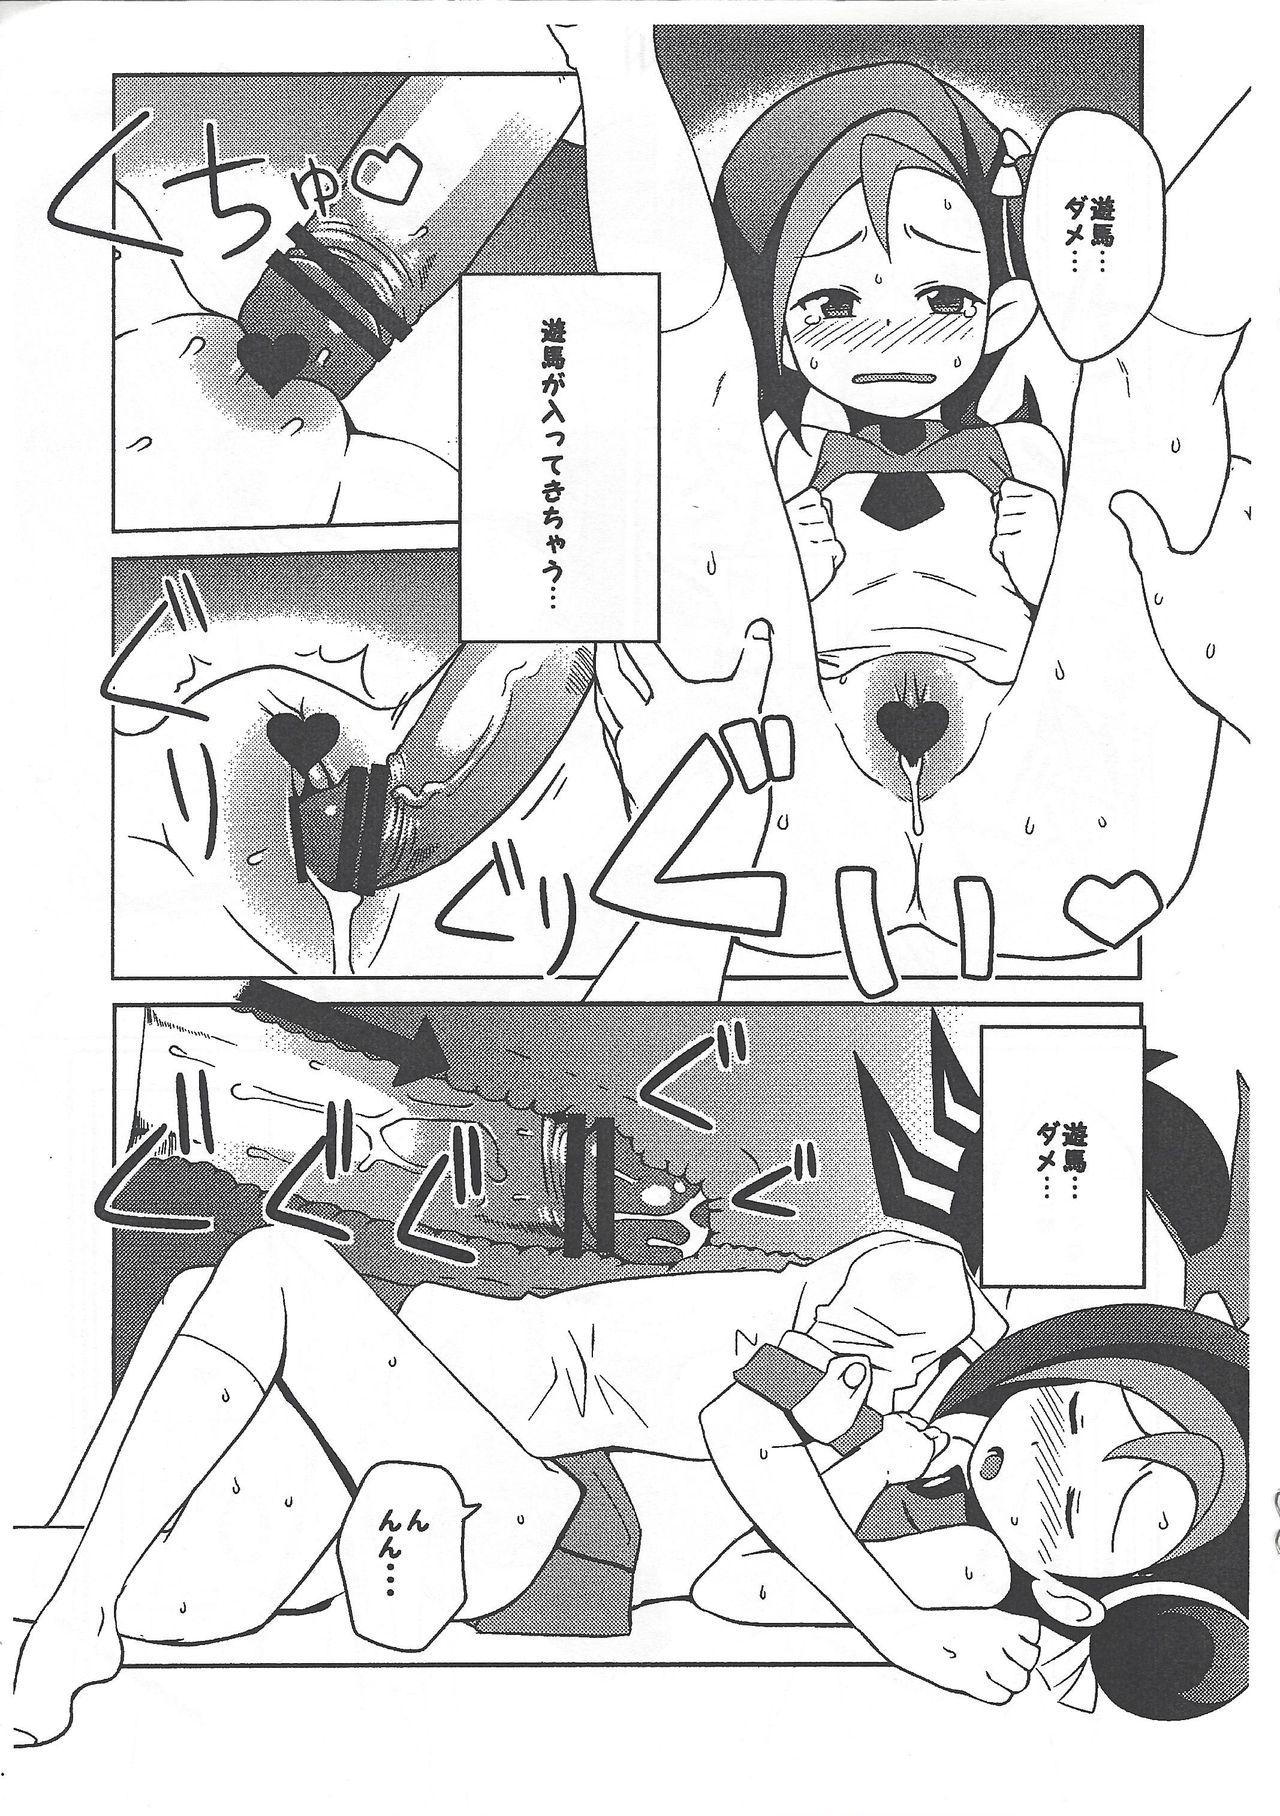 Storyline (Puniket 23) [Funi Funi Lab (Tamagoro)] Yu-Gi-Oh ZEXAL Kotori-chan Book (Tentative) (Yu-Gi-Oh! ZEXAL) - Yu gi oh zexal Newbie - Page 9